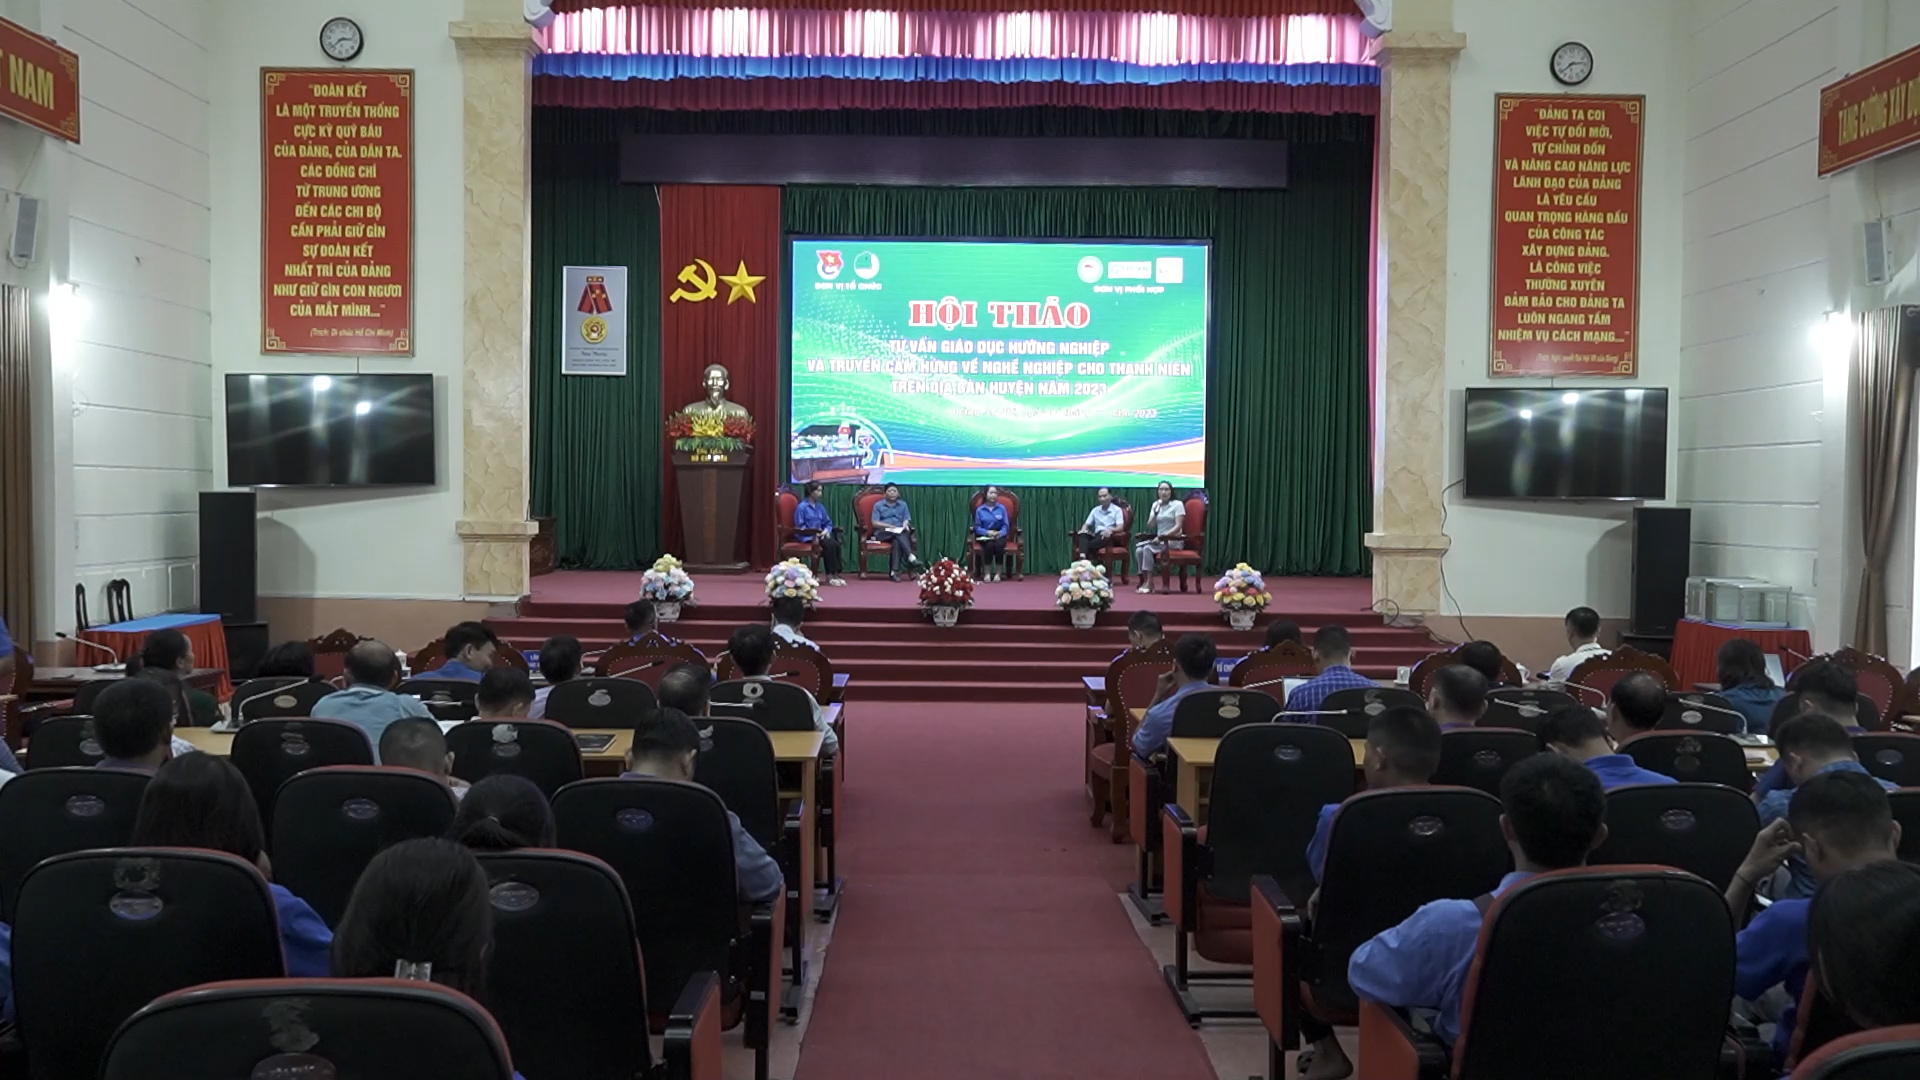 Hội thảo tư vấn giáo dục hướng nghiệp và truyền cảm hứng về nghề nghiệp cho thanh niên trên địa bàn huyện Hoàng Su Phì năm 2023.